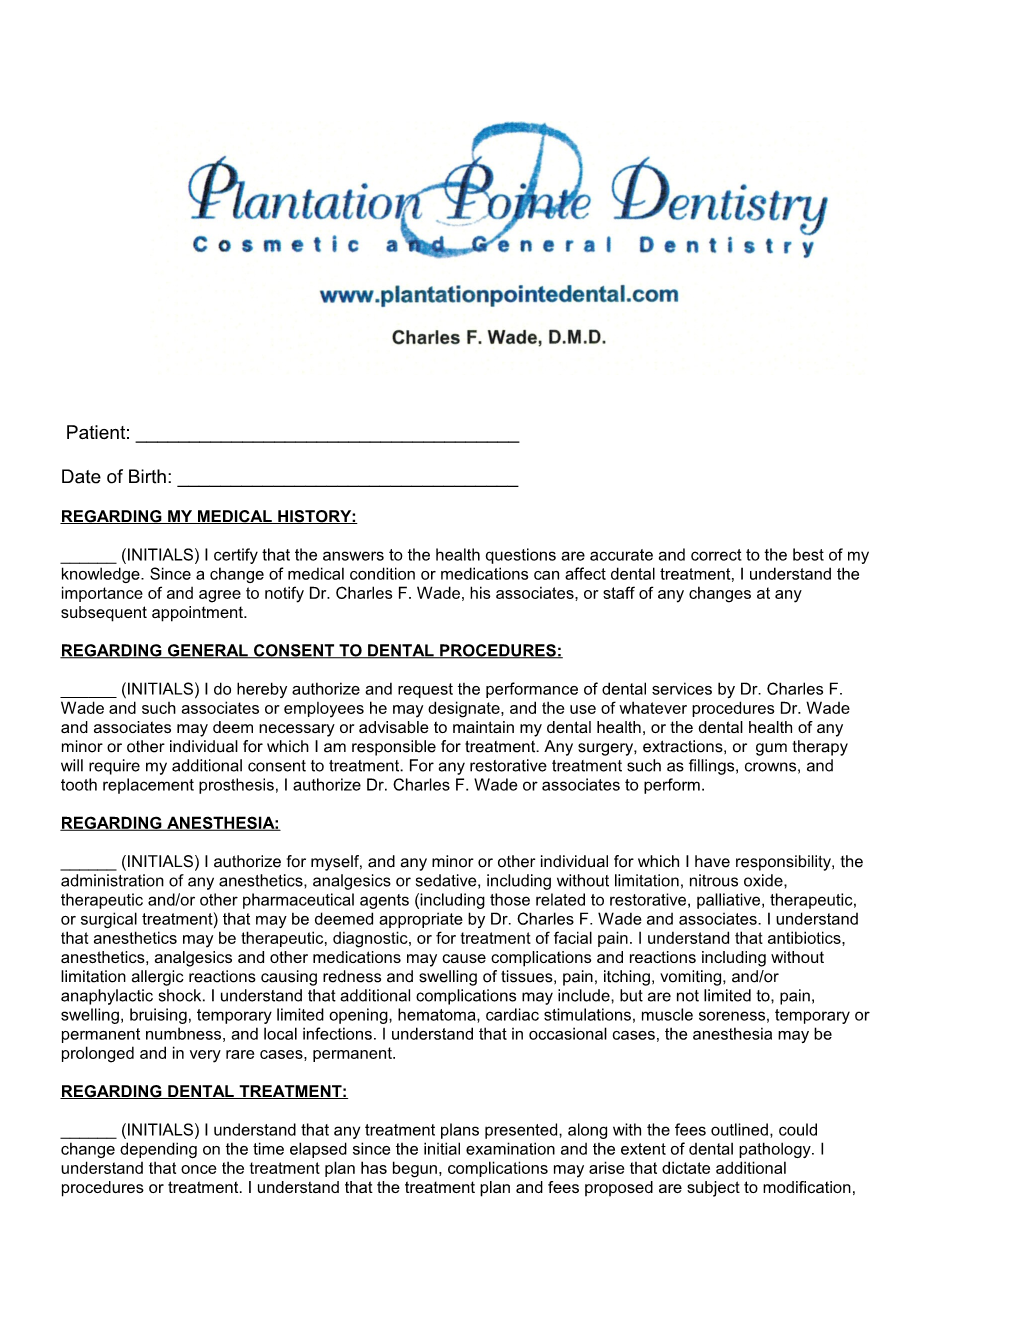 Regarding General Consent to Dental Procedures